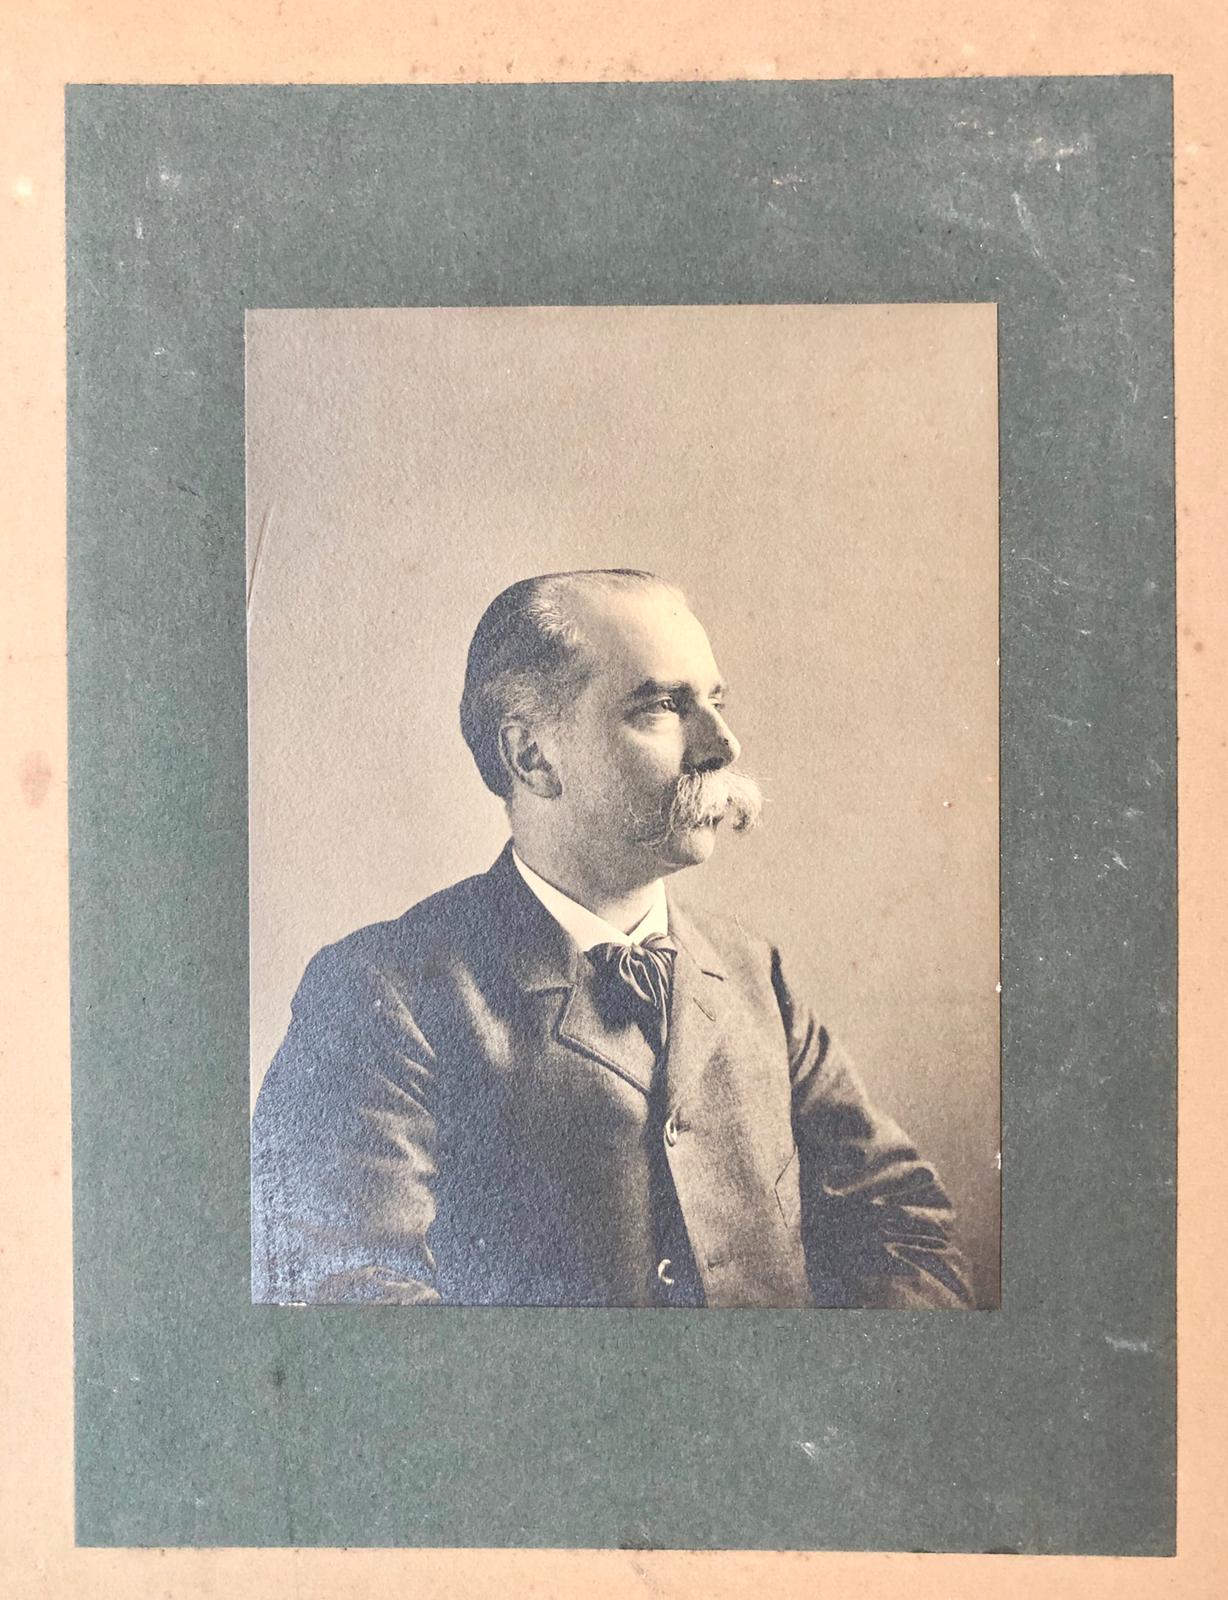 [Photography, Portrait photo, Rozenburg, The Hague, 1913] Portretfoto 13x18 cm. van S. Schellink, d.d. 16-6-1913, afkomstig uit het bezit van dr. E.C.J. Mohr, hoogleraar tropische economie te Utrecht.